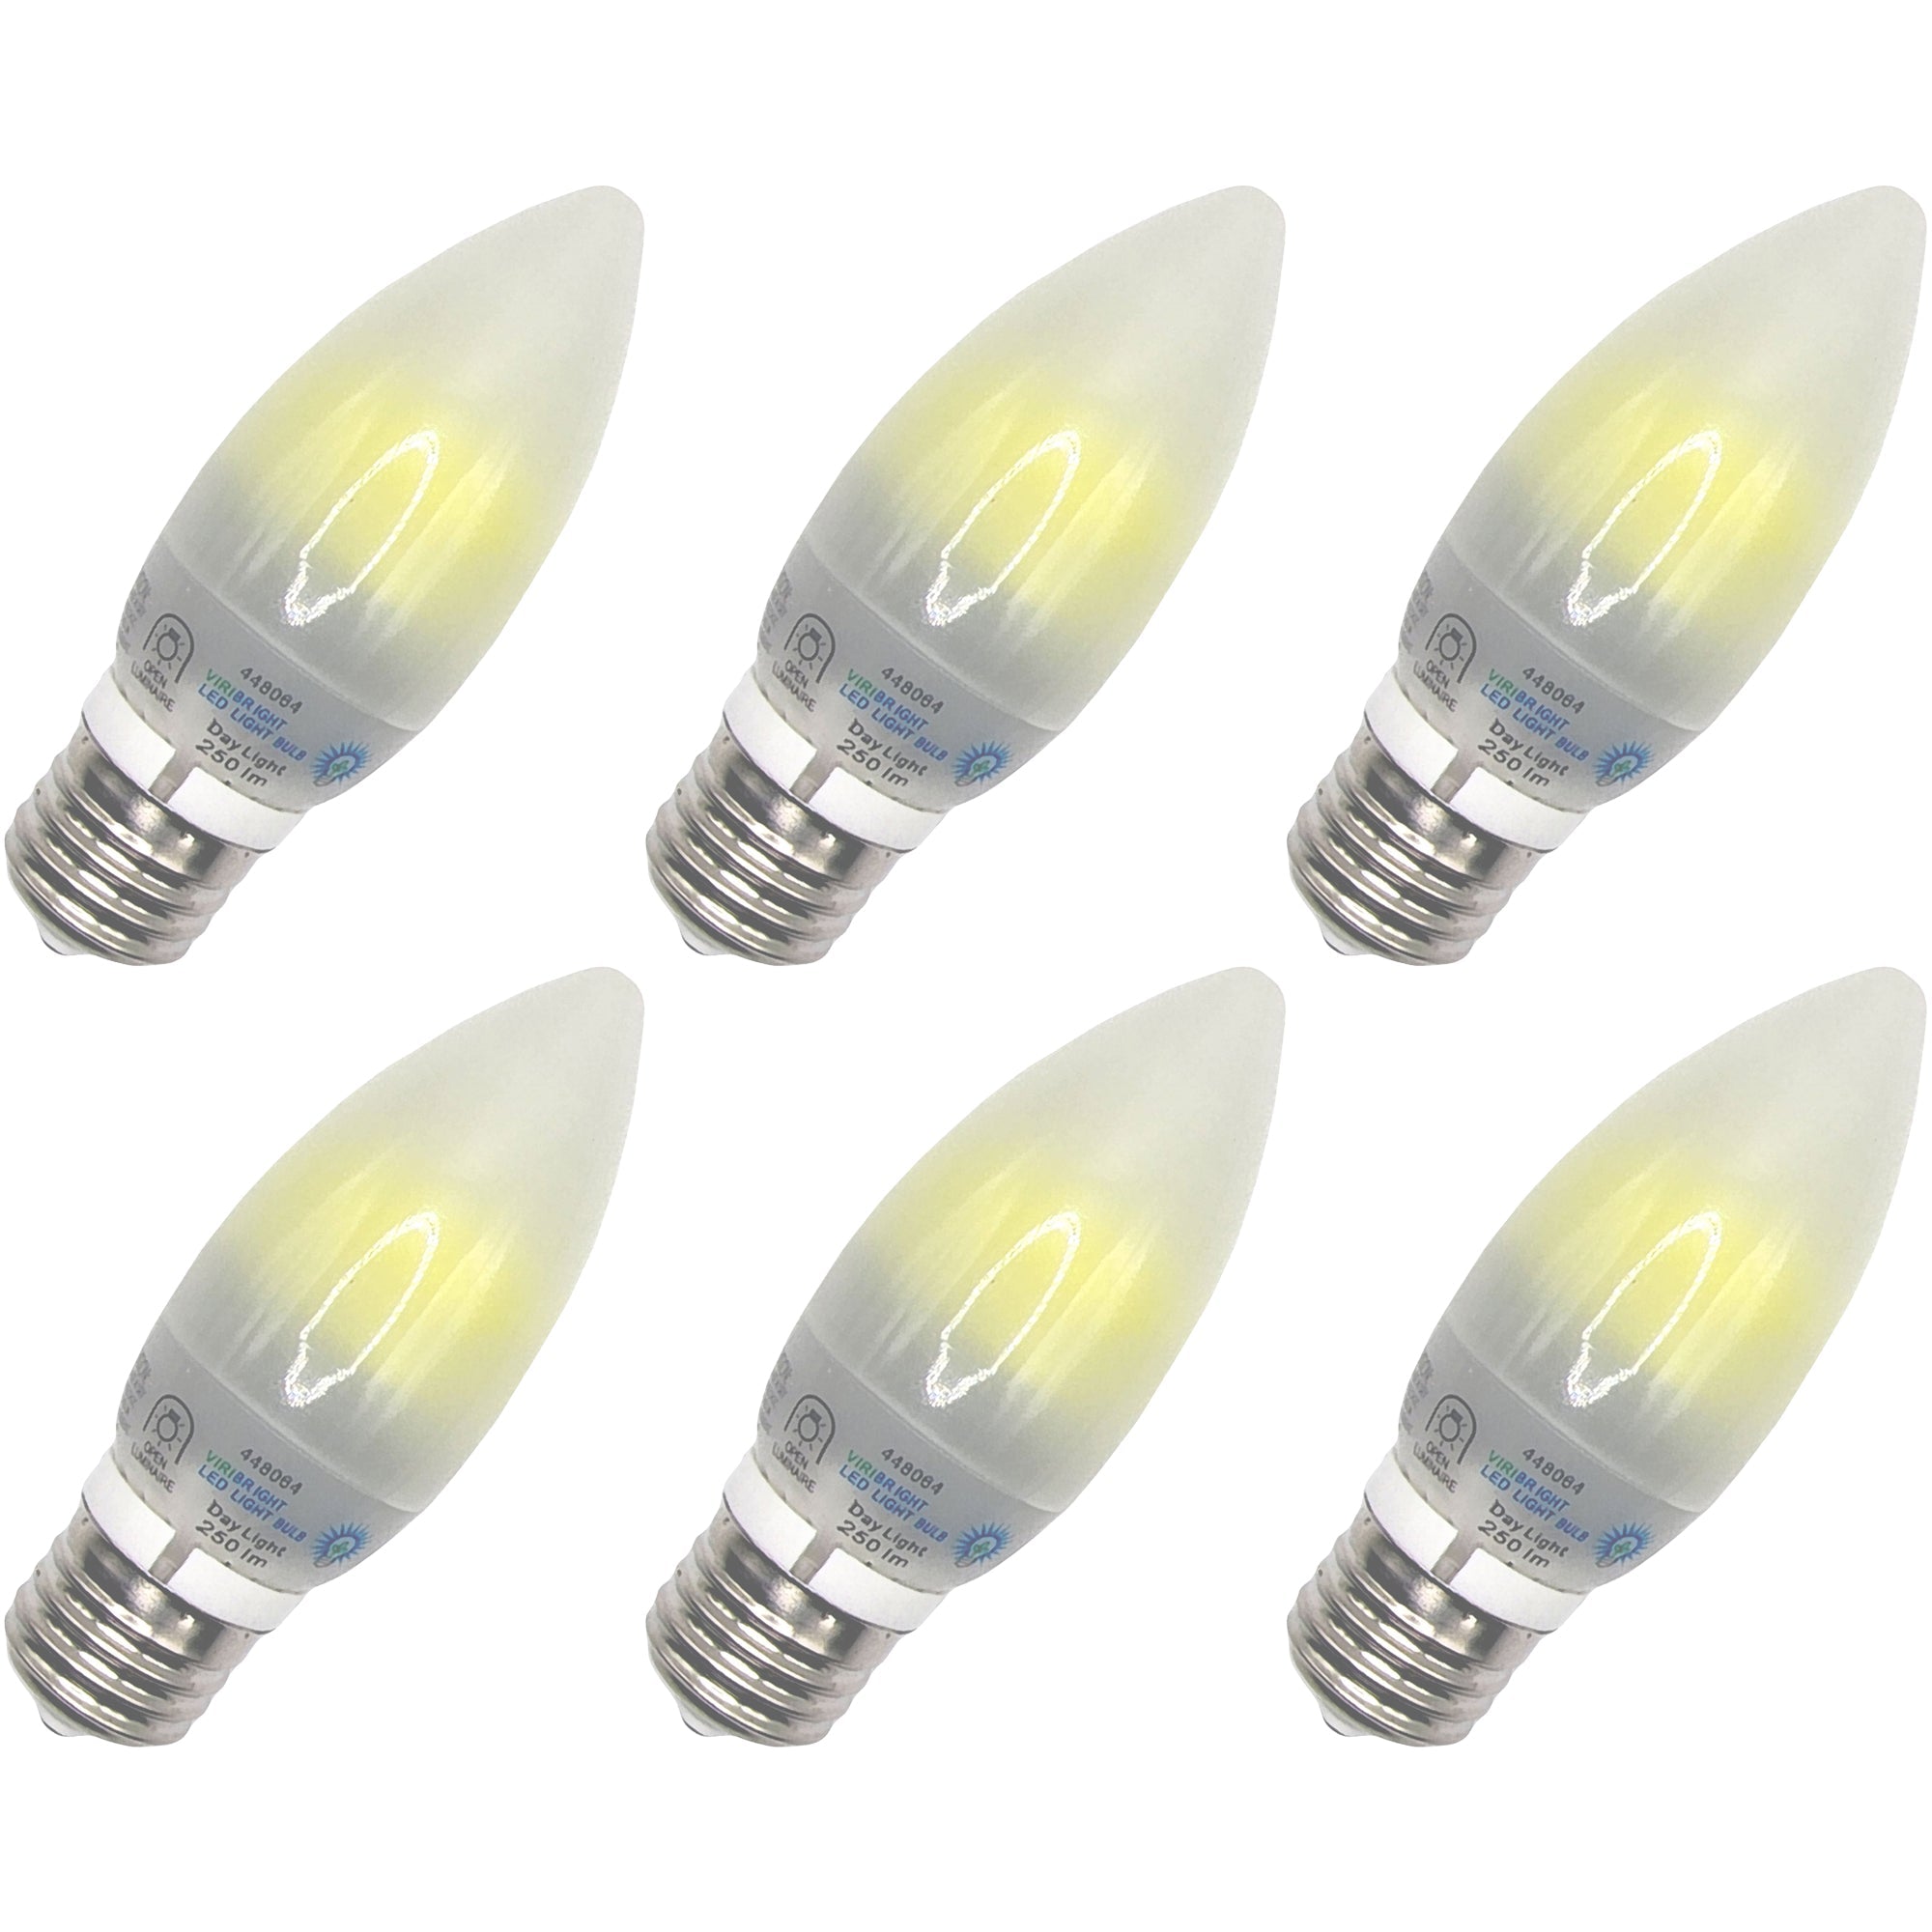 Viribright - 22-Watt Equivalent B11 E26 Frosted LED Light Bulb - 74275-6